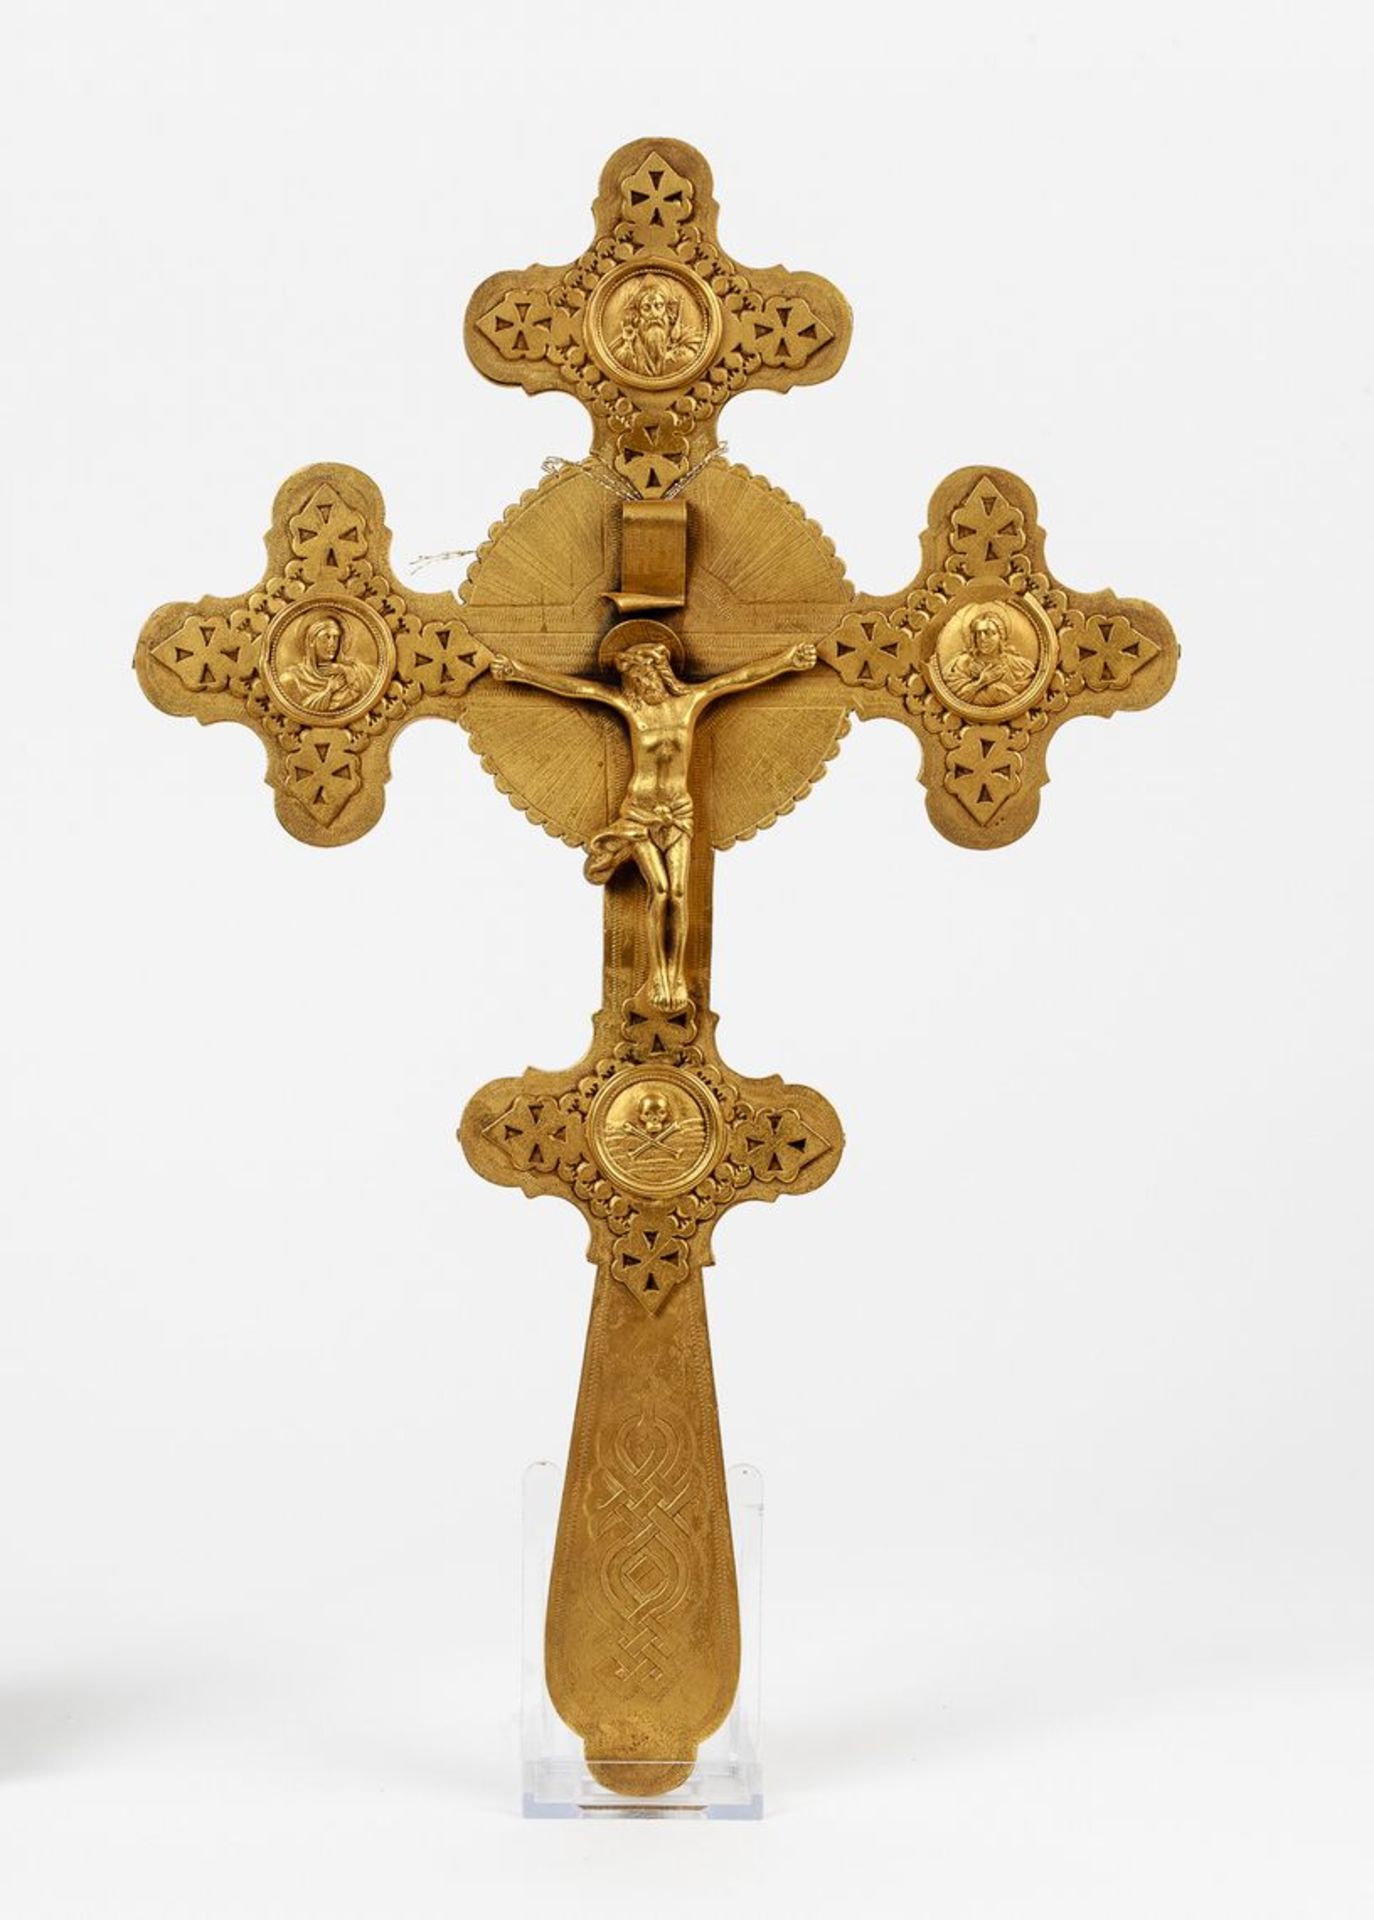 Orthodoxes SegenskreuzMessingblech, gegossen, ziseliert. Corpus Christi vollrund gegossen im Vier-